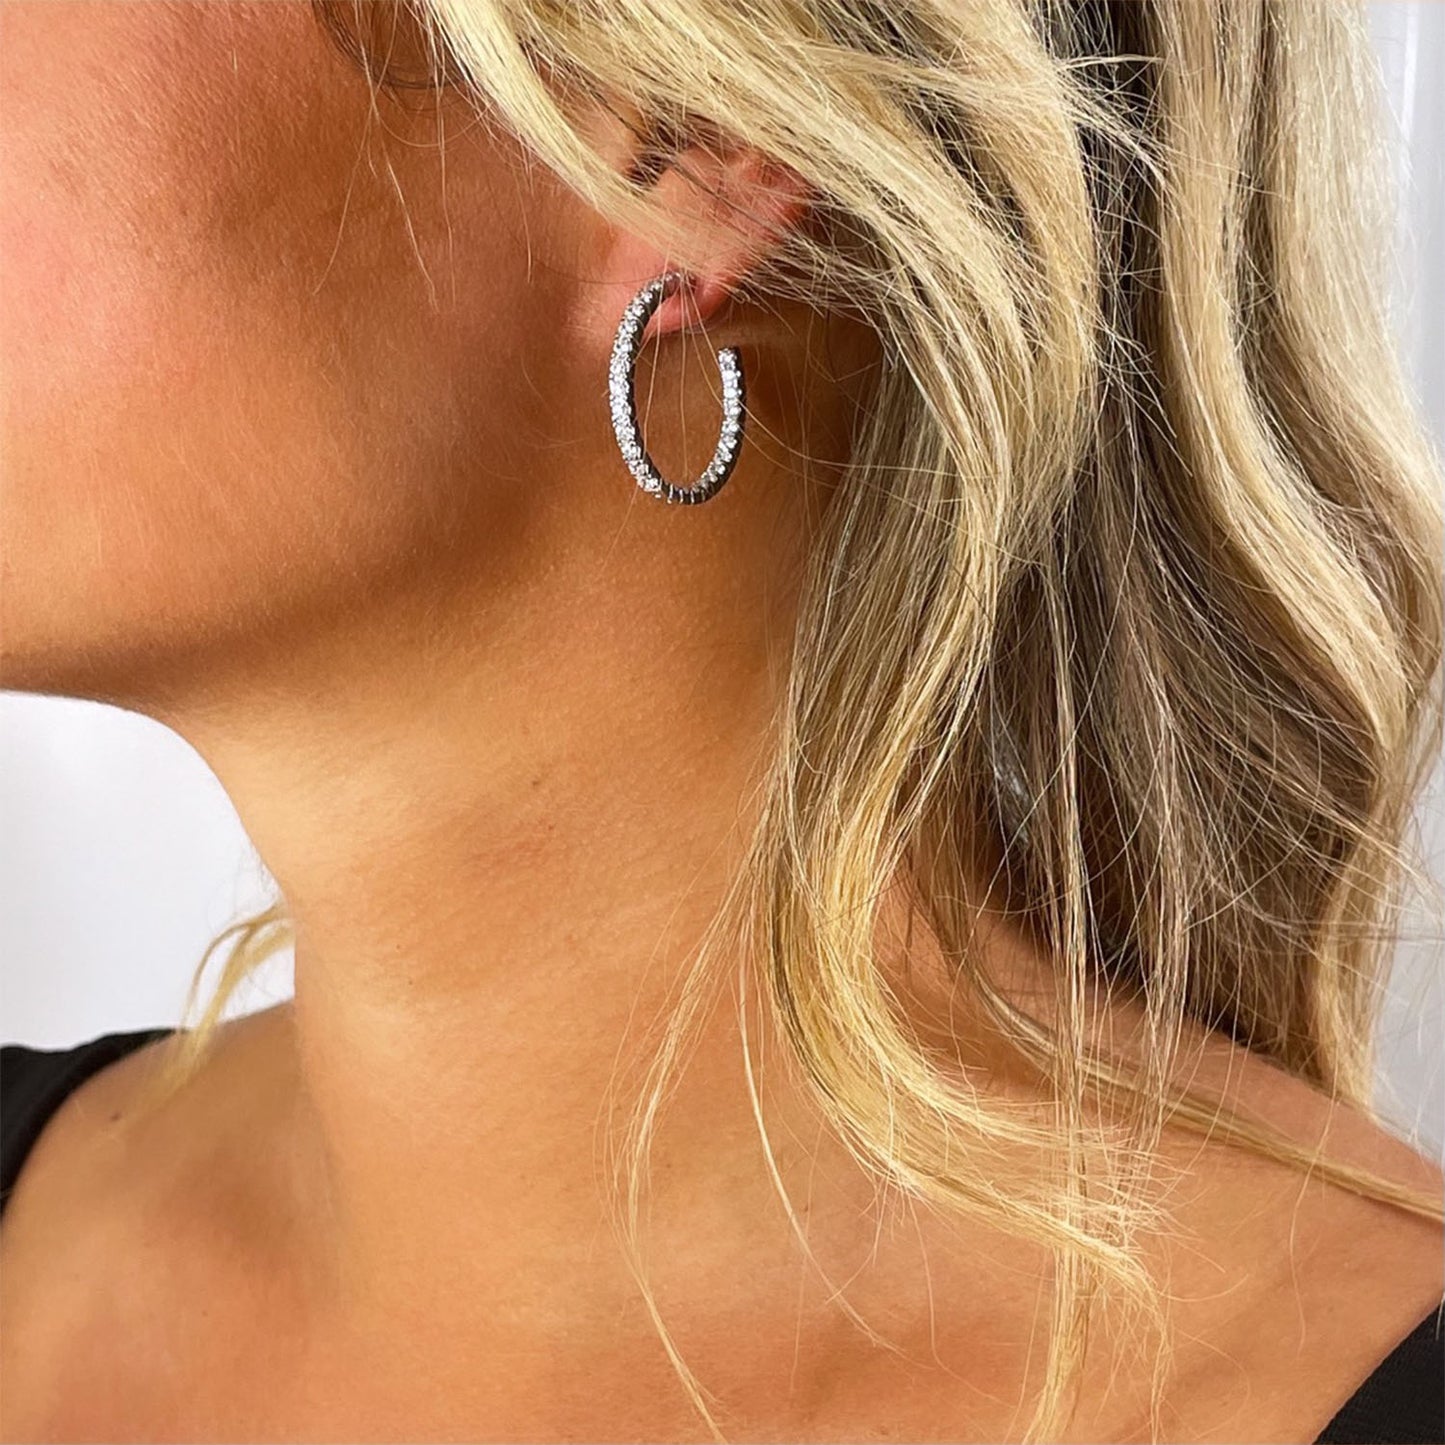 Bella 30mm Pave CZ Diamond Hoop Earrings, Silver - Zahra Jewelry